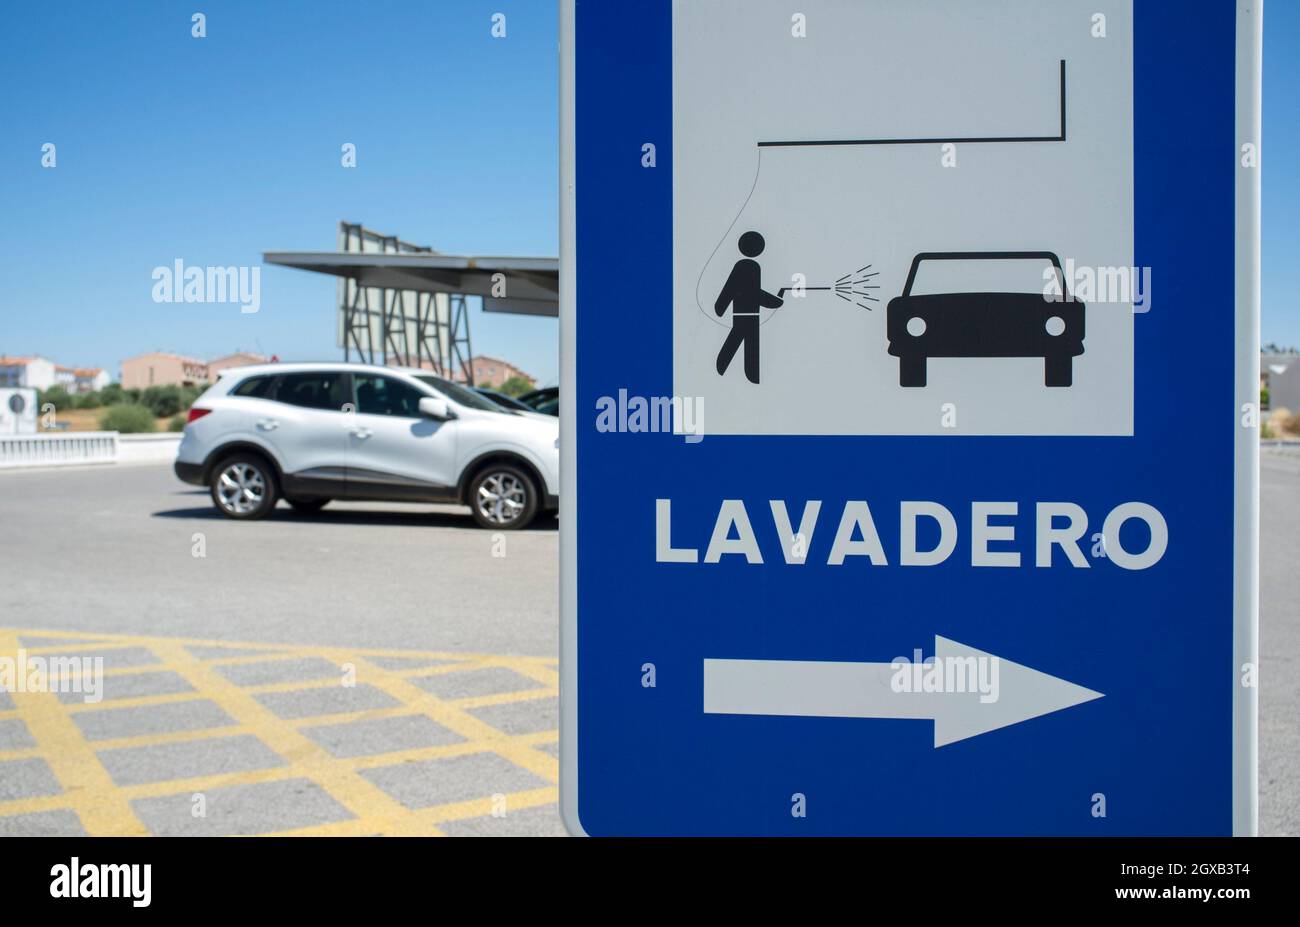 Car wash area sign. Sport utility vehicle at background. Spanish language. Stock Photo